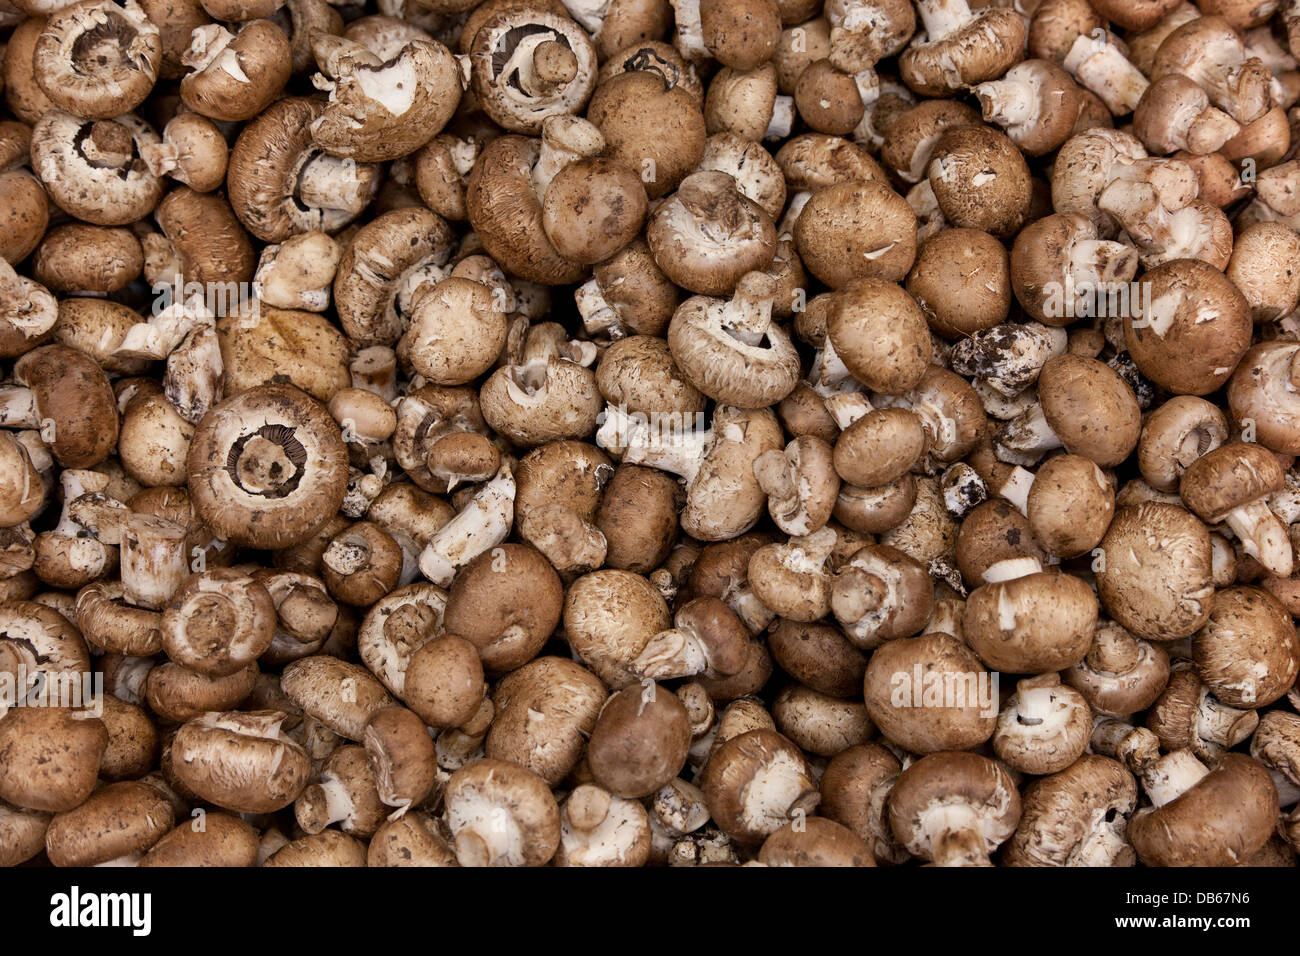 Chestnut mushrooms full frame Stock Photo